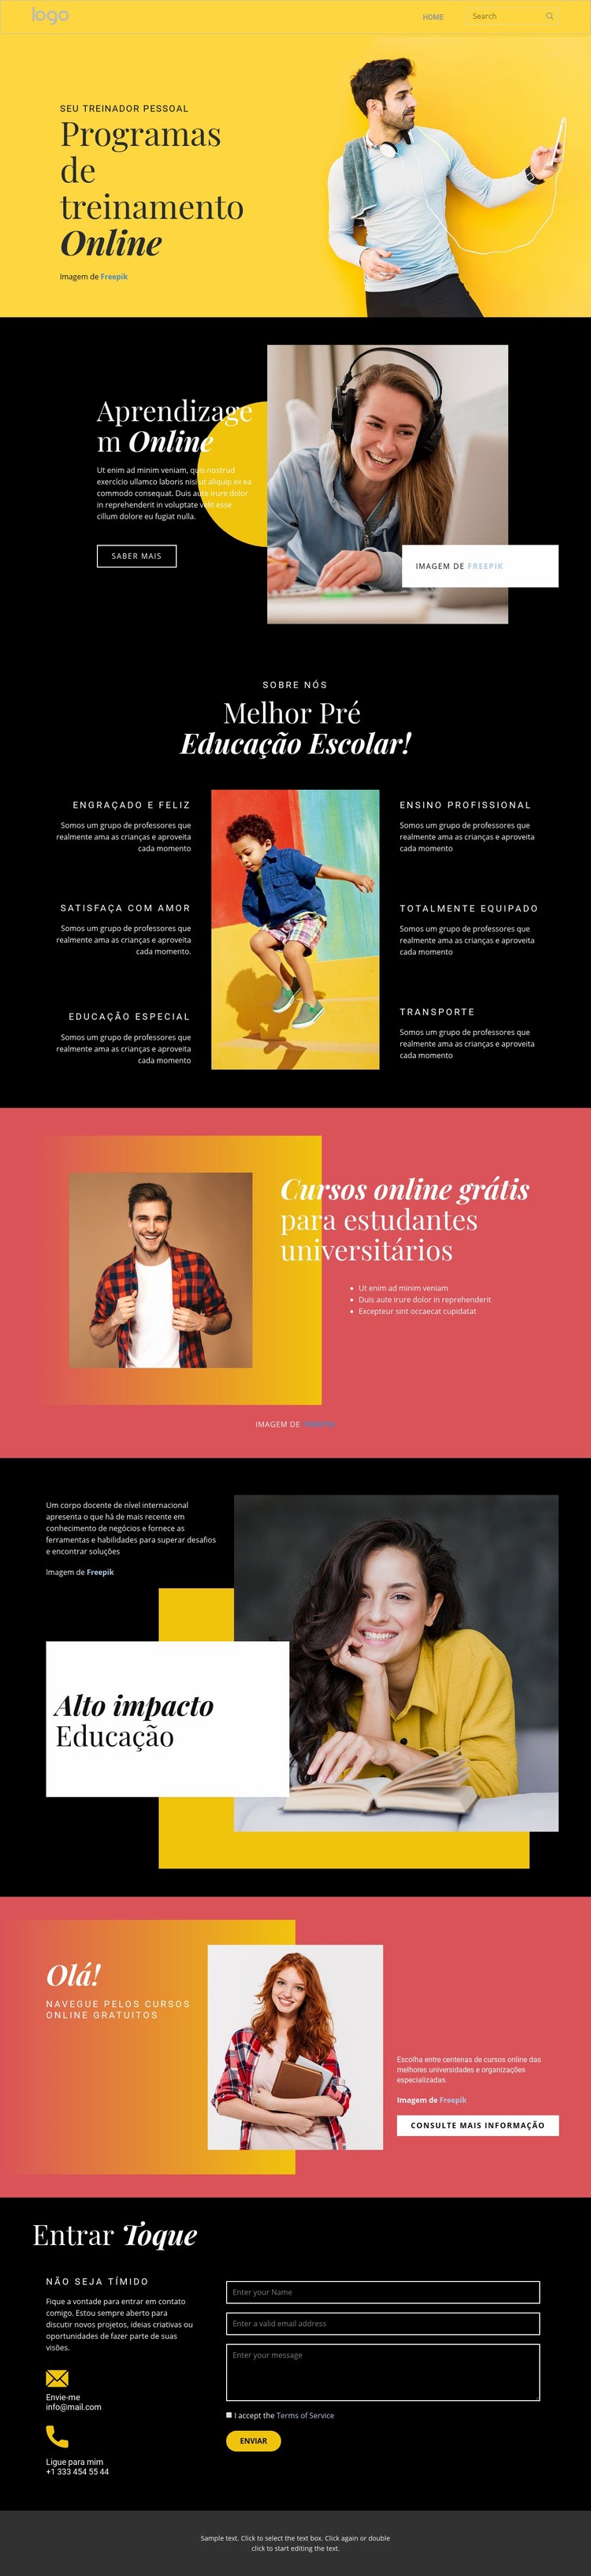 Boa educação online Design do site